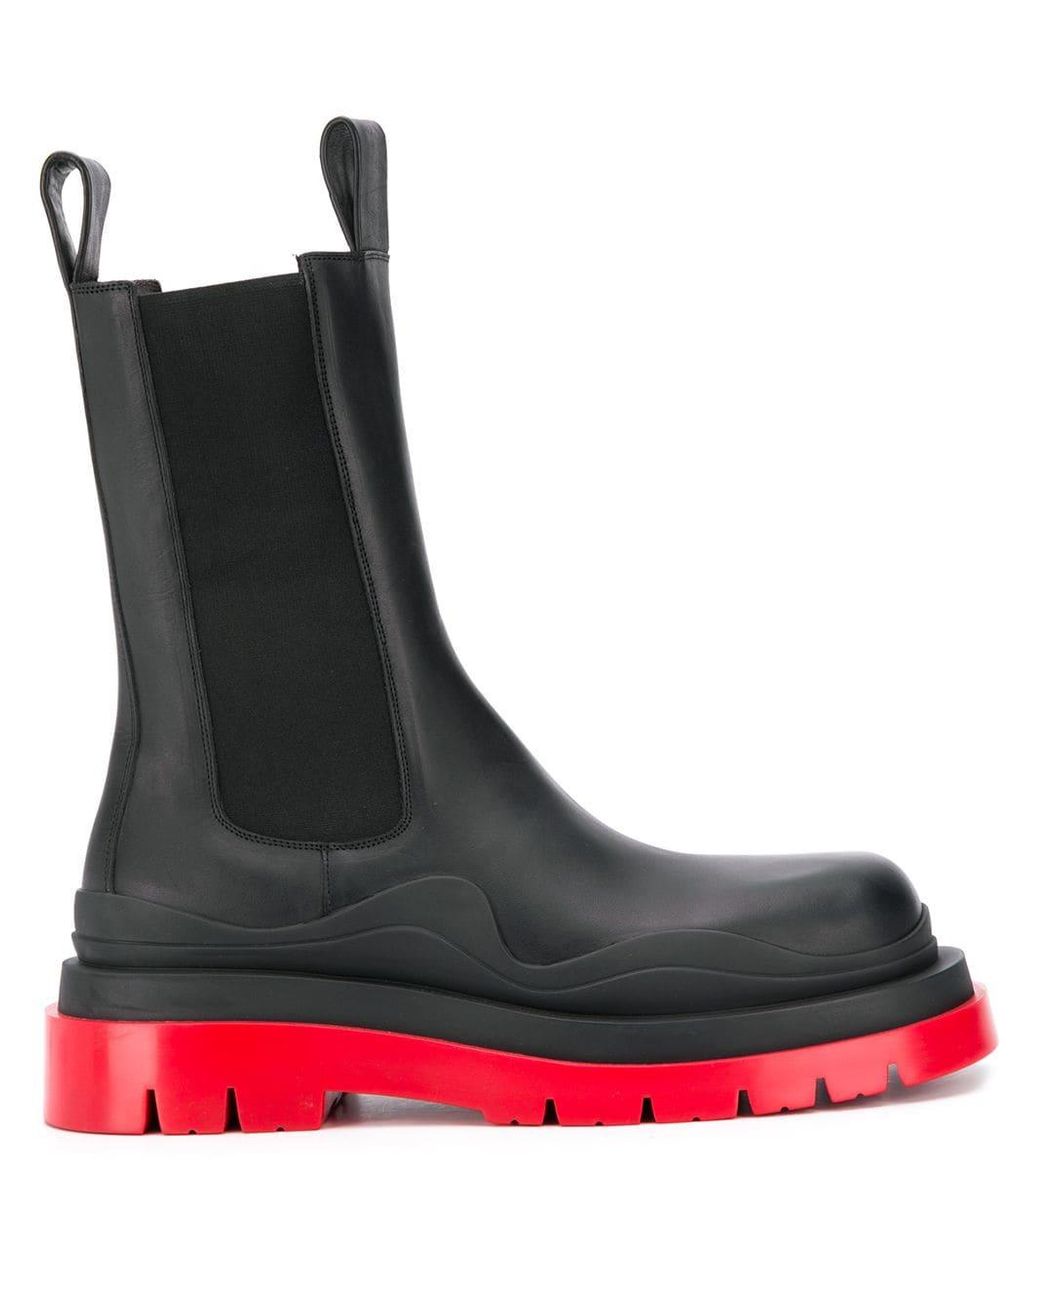 Bottega Veneta Leather Chunky Ankle Boots in Black for Men - Lyst